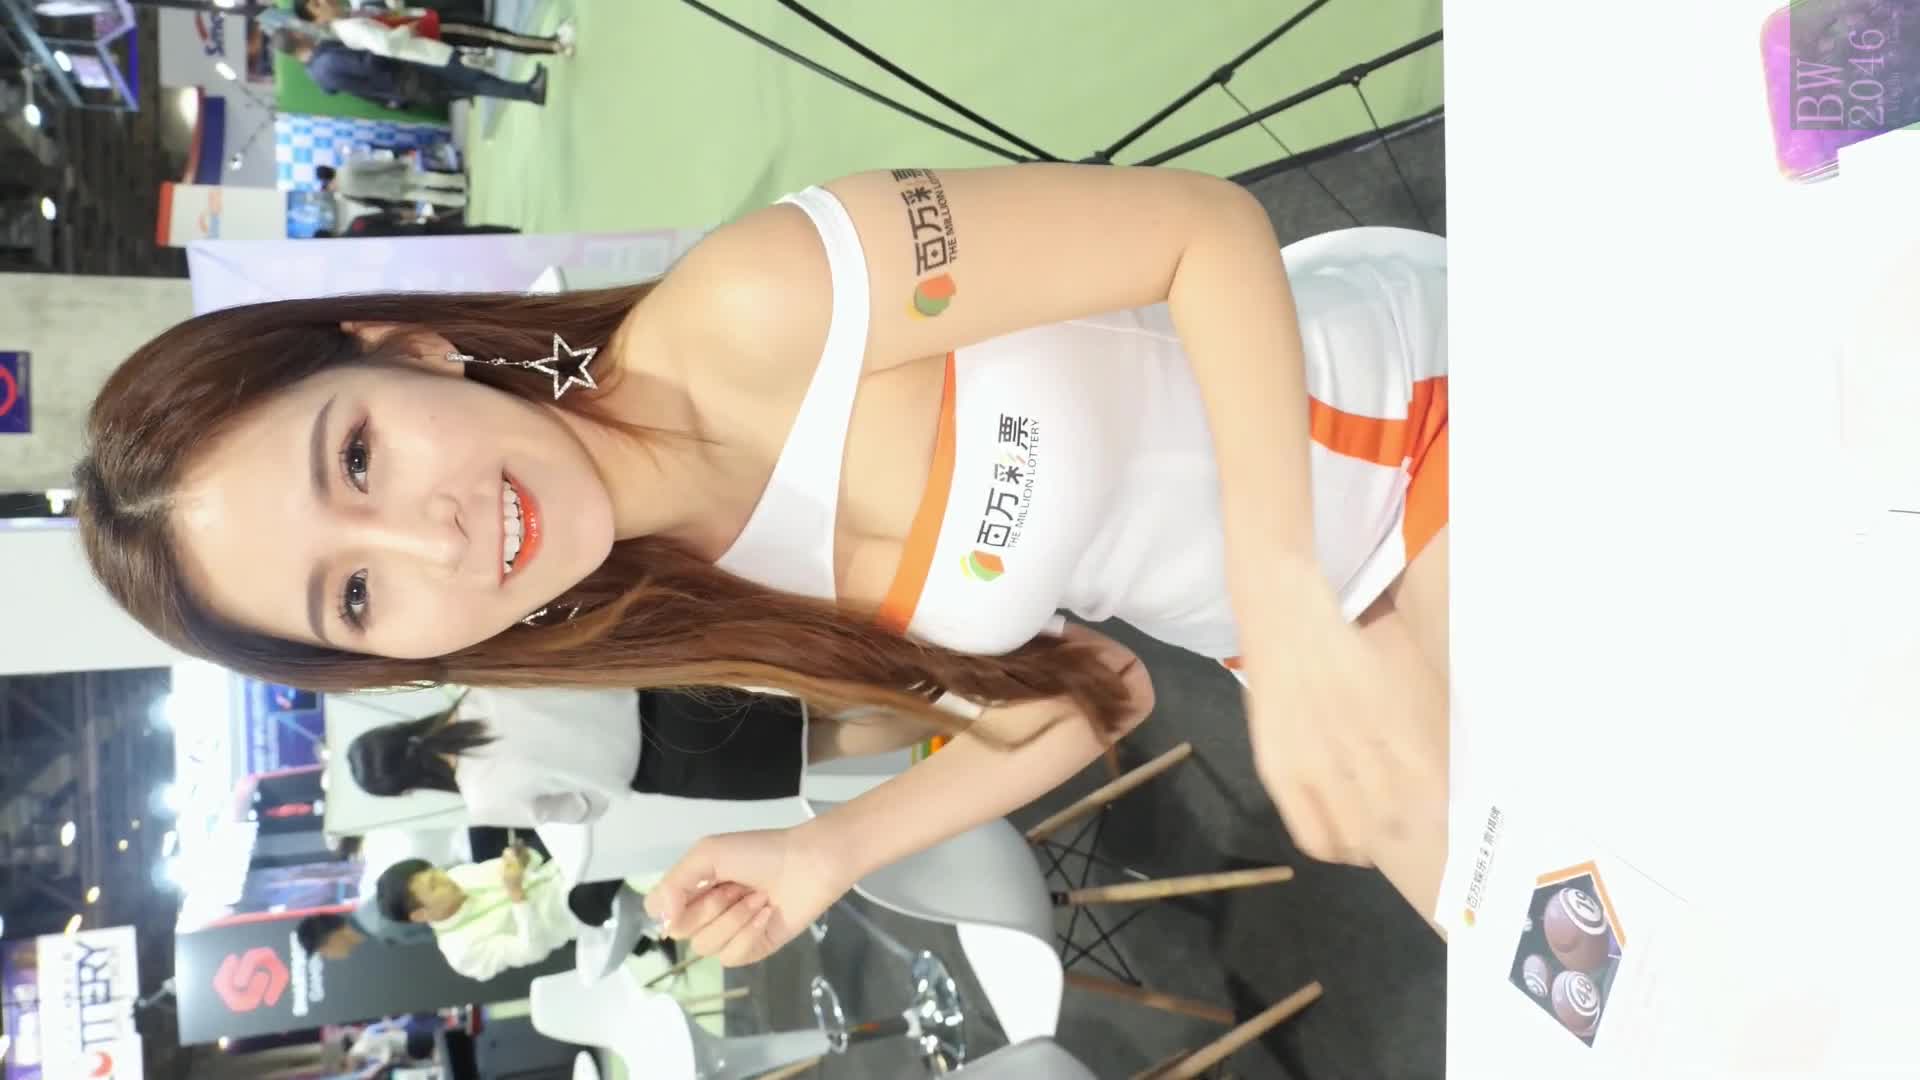 亞洲國際娛樂展 G2E Asia 2019  –  Model 12 王凱莉 Kelly Wong  汪汪 (Weibo  Wonwonwong) @  (Horizontal Version)